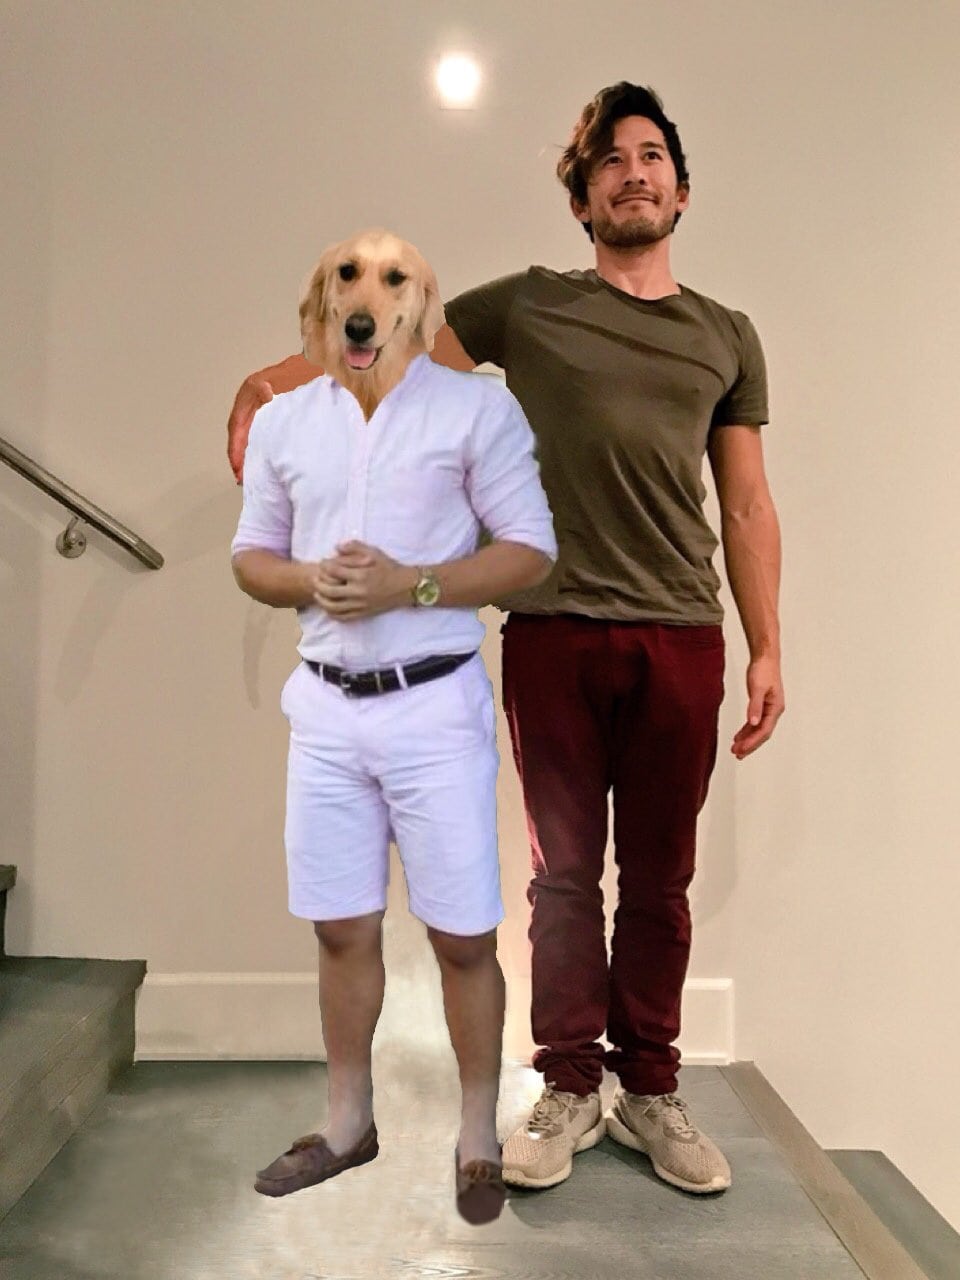 Блогер попросил подписчиков зафотошопить их с собакой, как на картинке, но те устроили смехопанораму 82